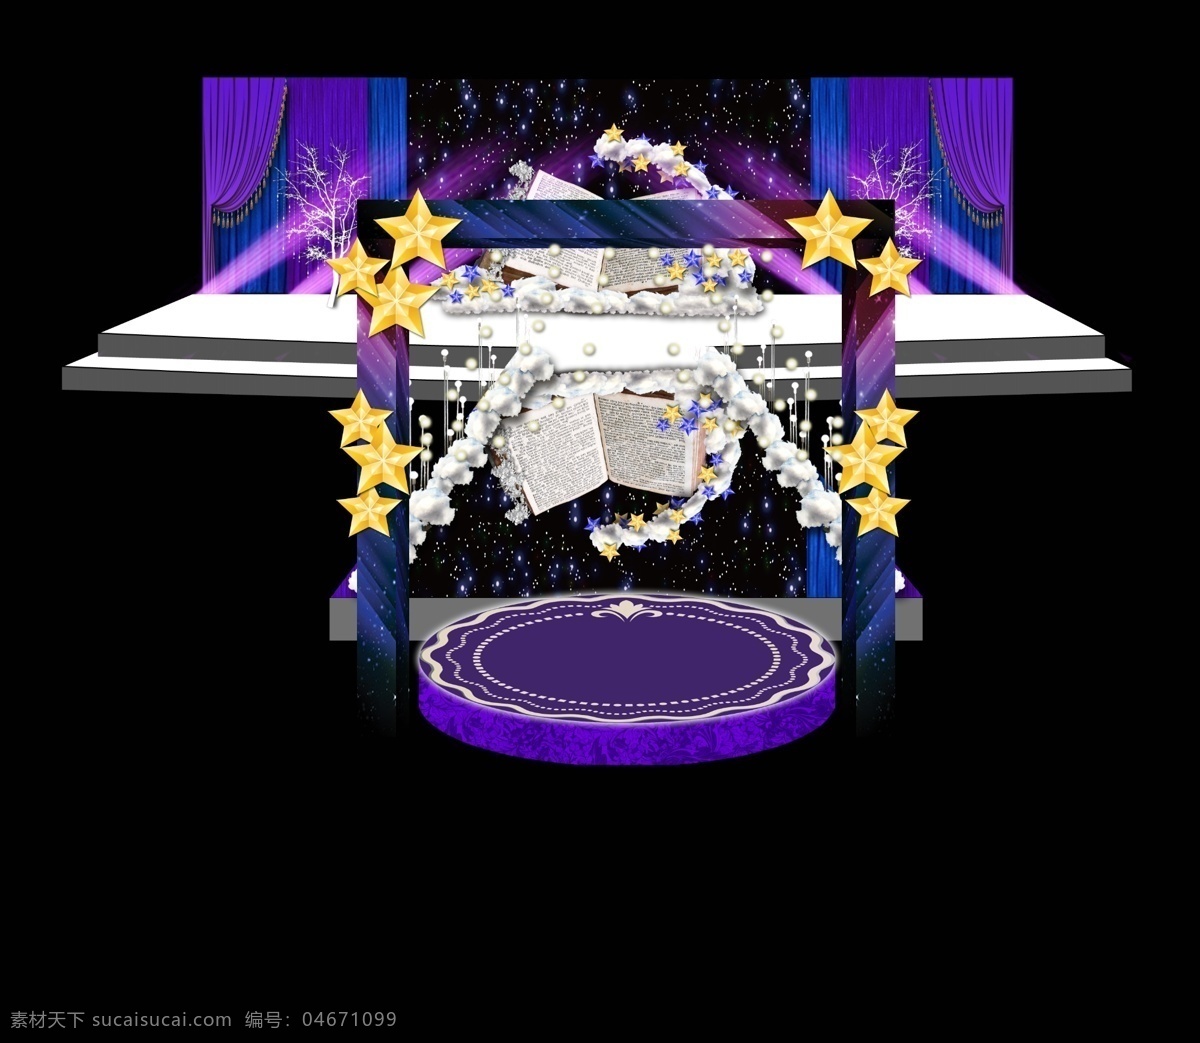 梦幻 紫色 婚礼 主会场 婚礼设计 婚礼主舞台 唯美婚礼 紫色婚礼 灯光舞台设计 创意婚礼